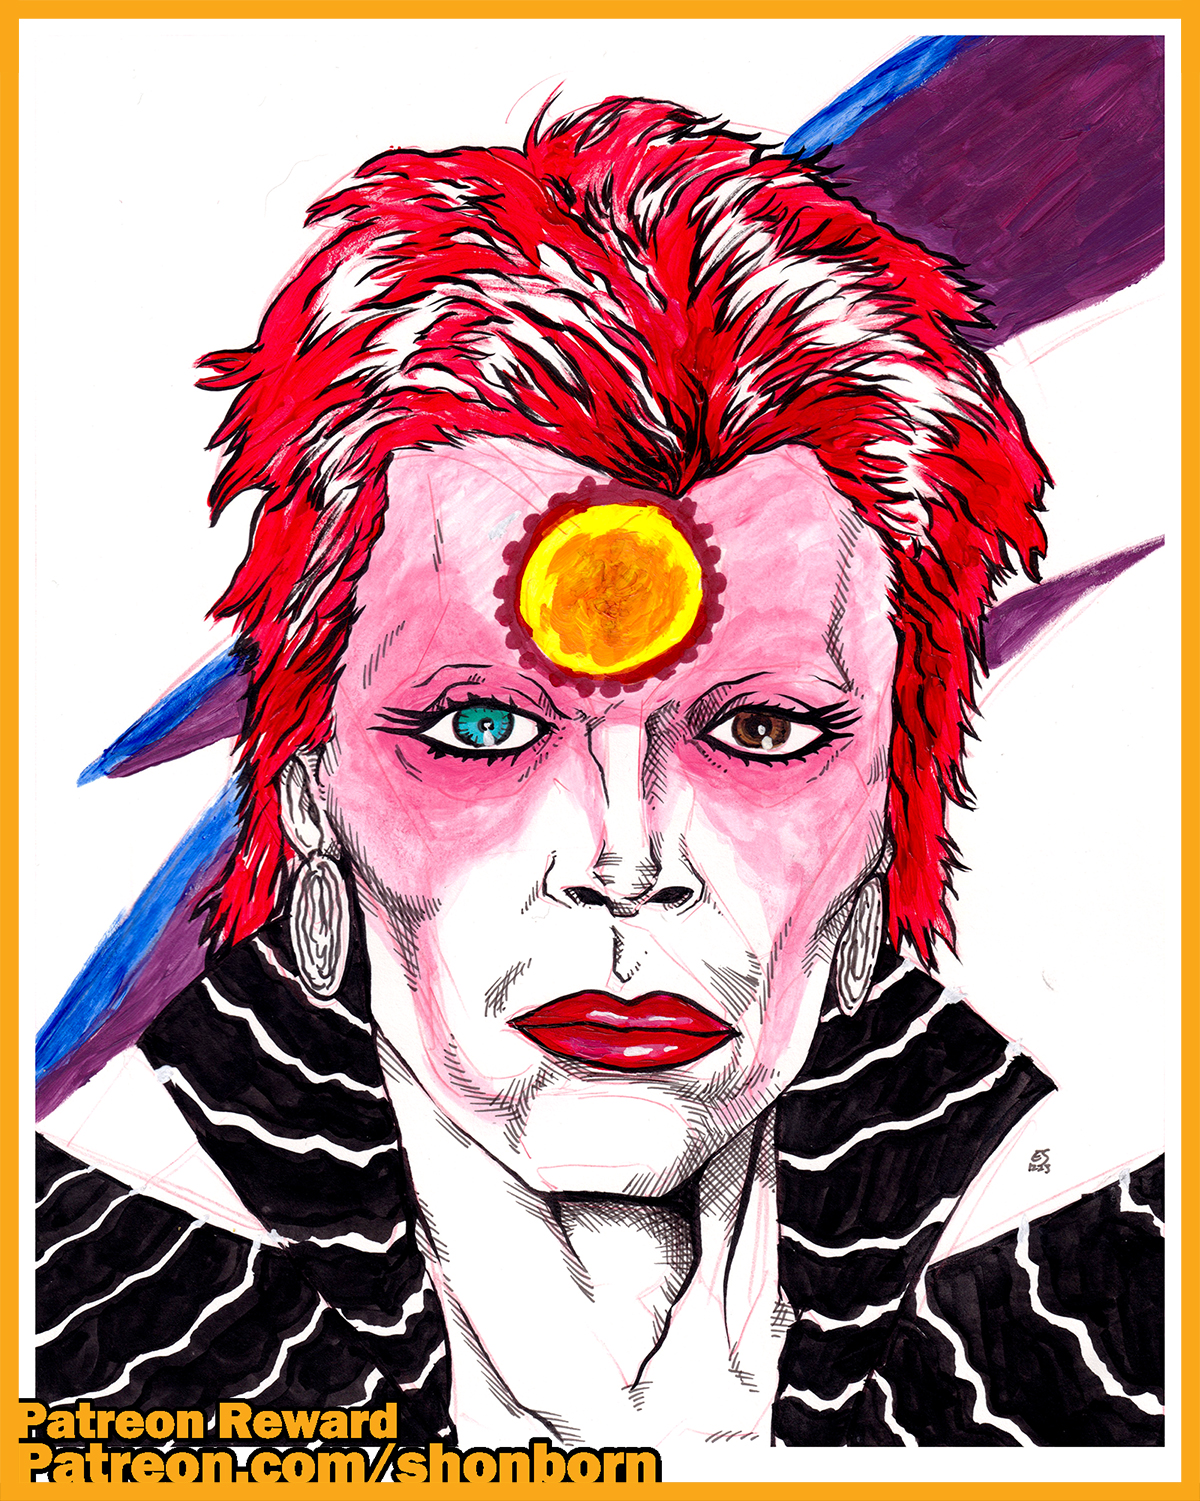 Patreon Reward: David Bowie